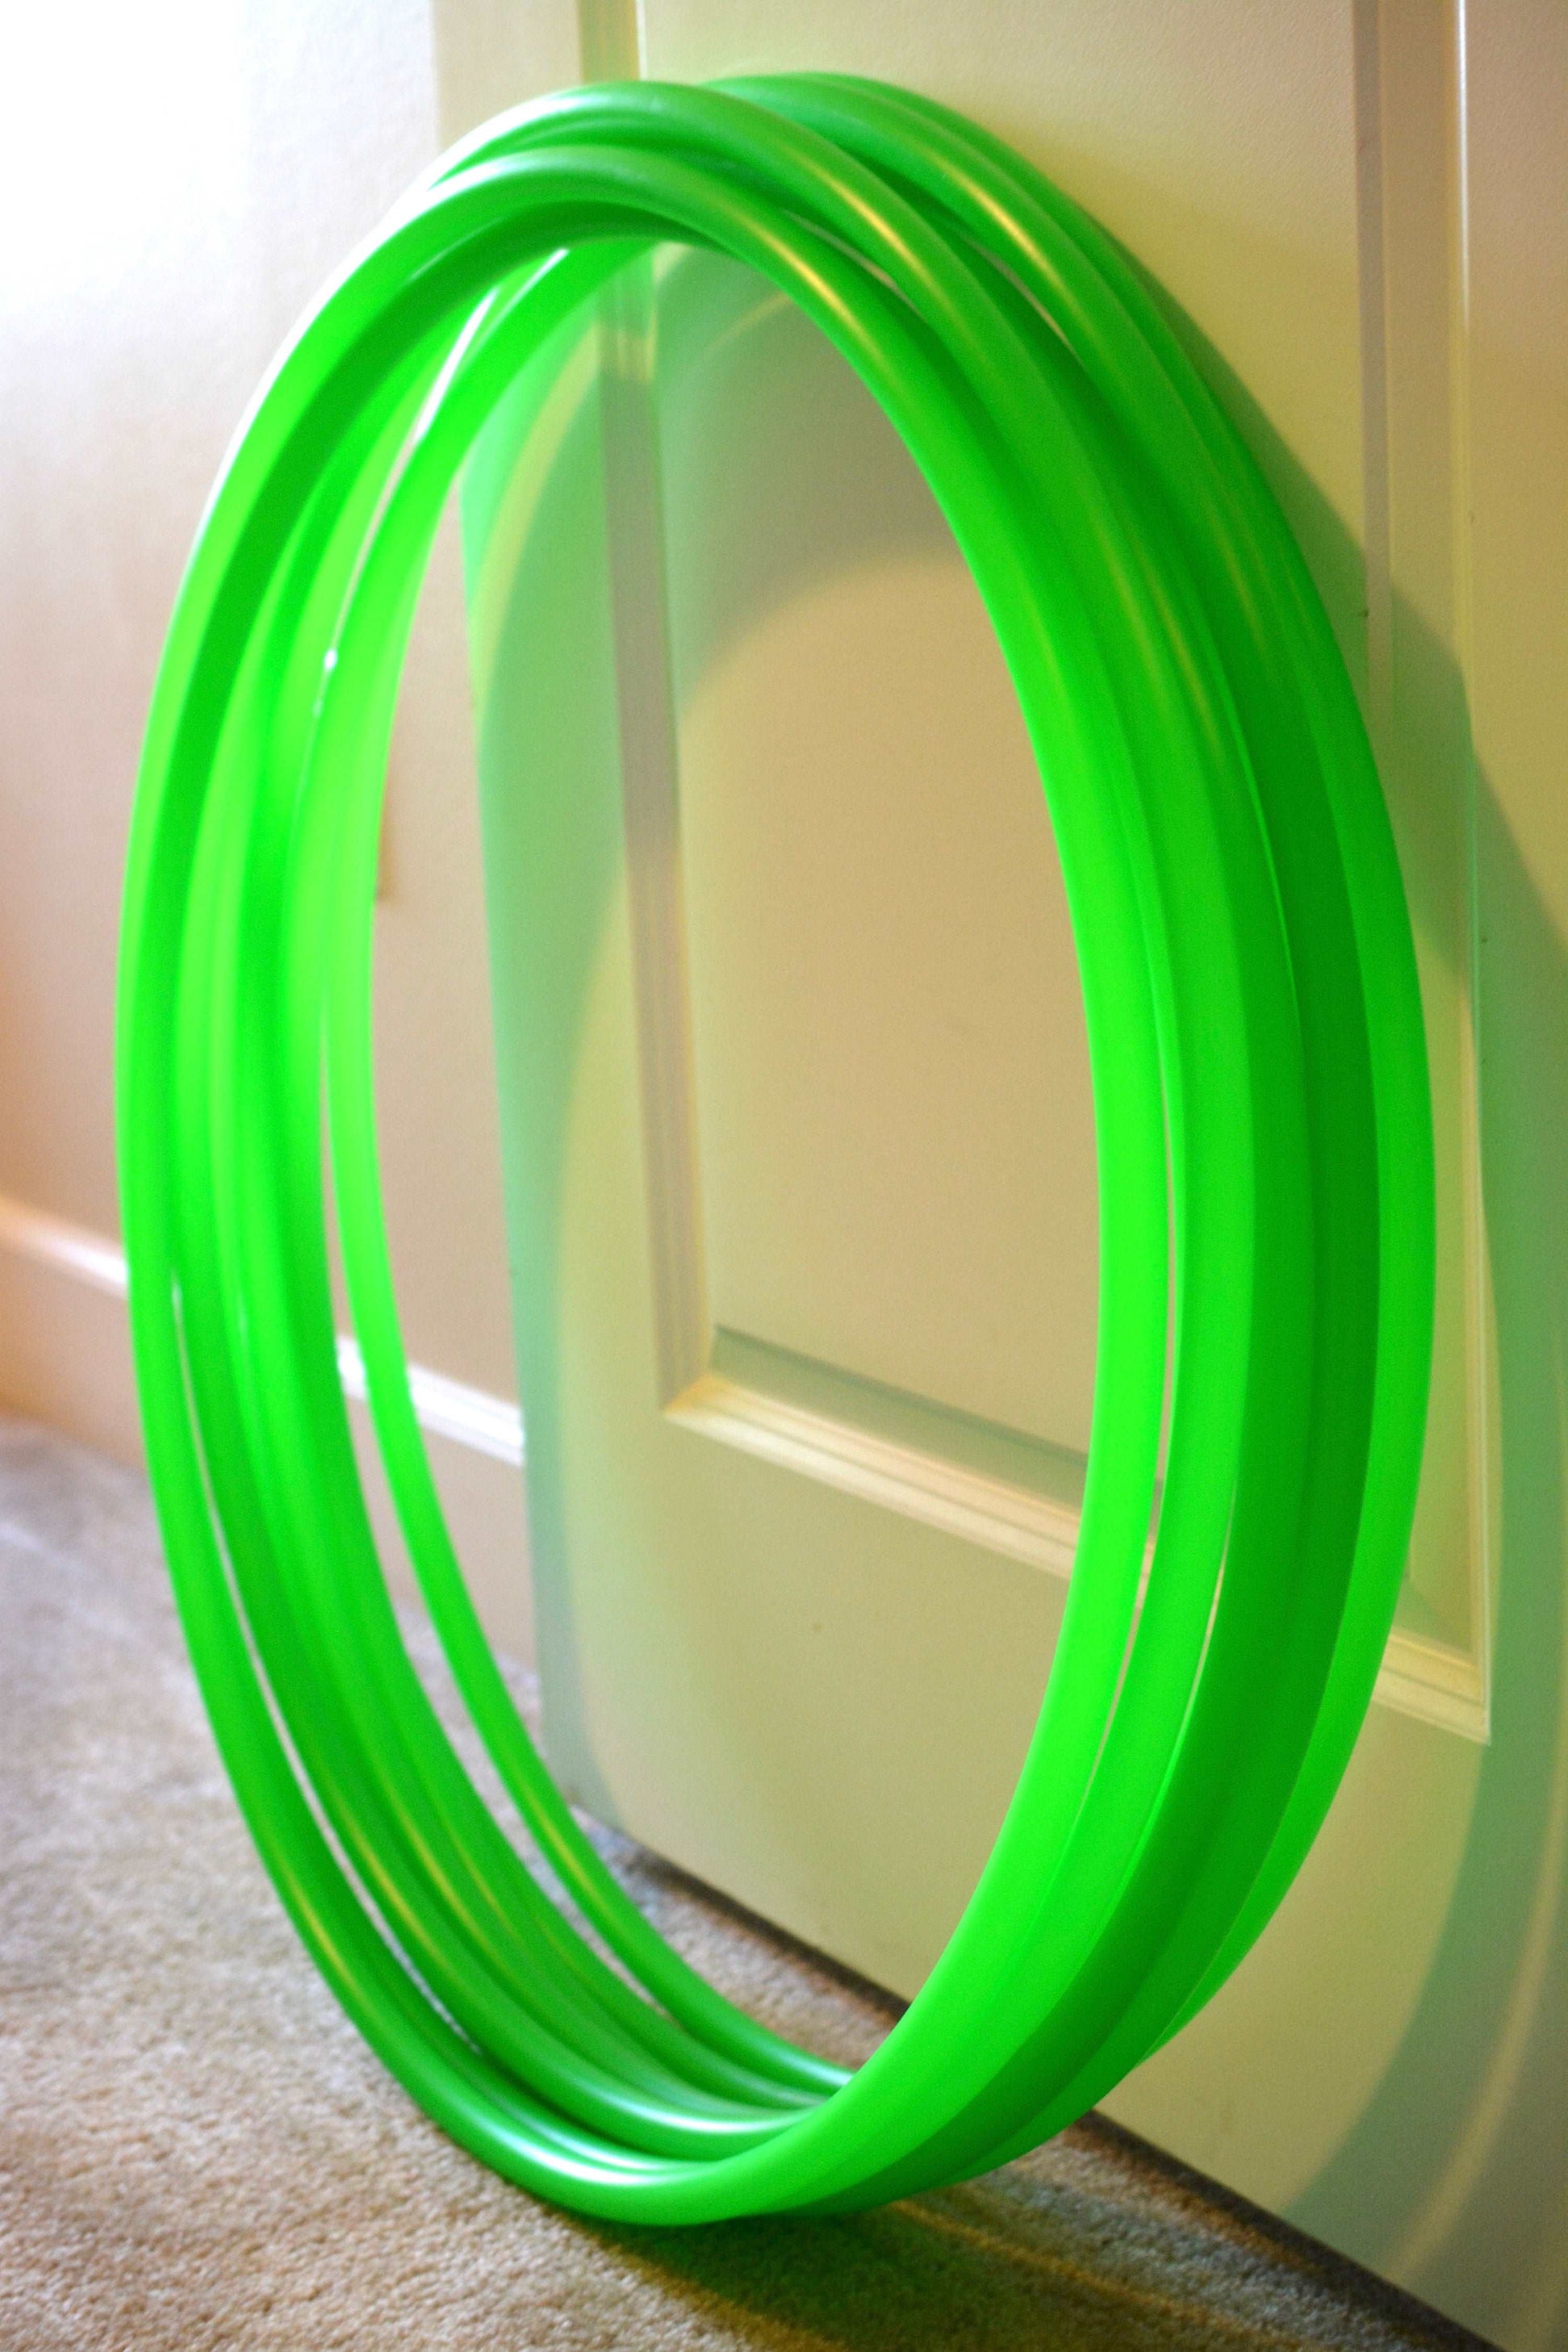 uv green tubing indoors